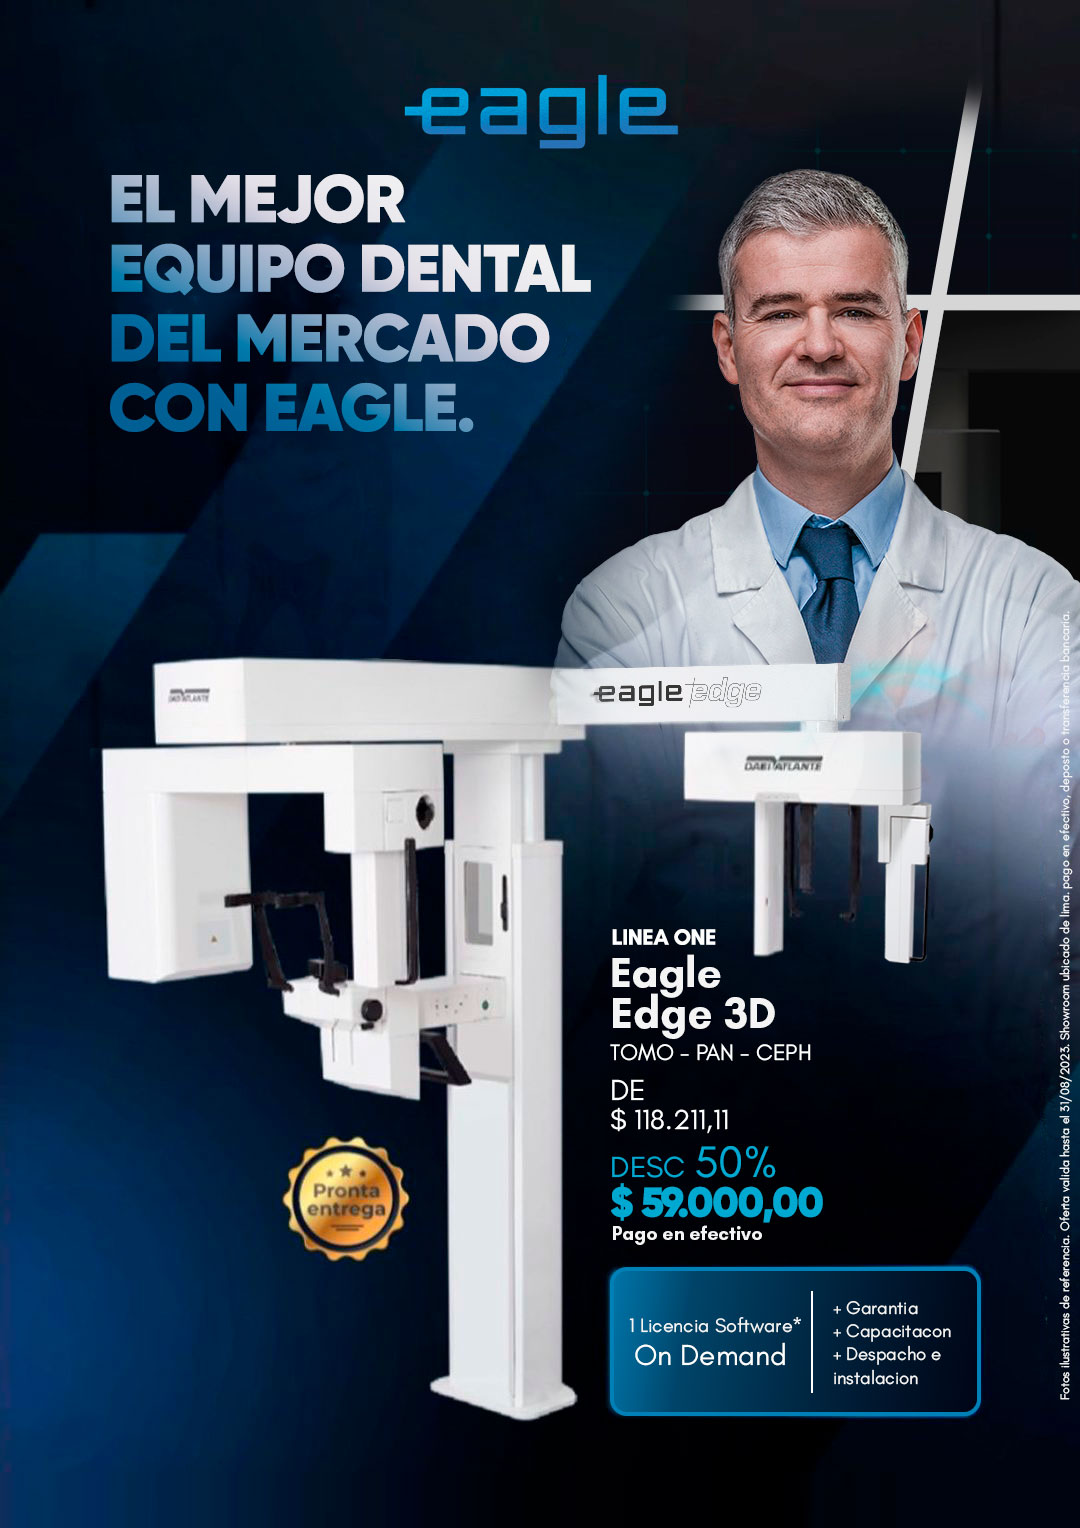 Unidades Dentales Peru, Fabrica de Equipos Dentales